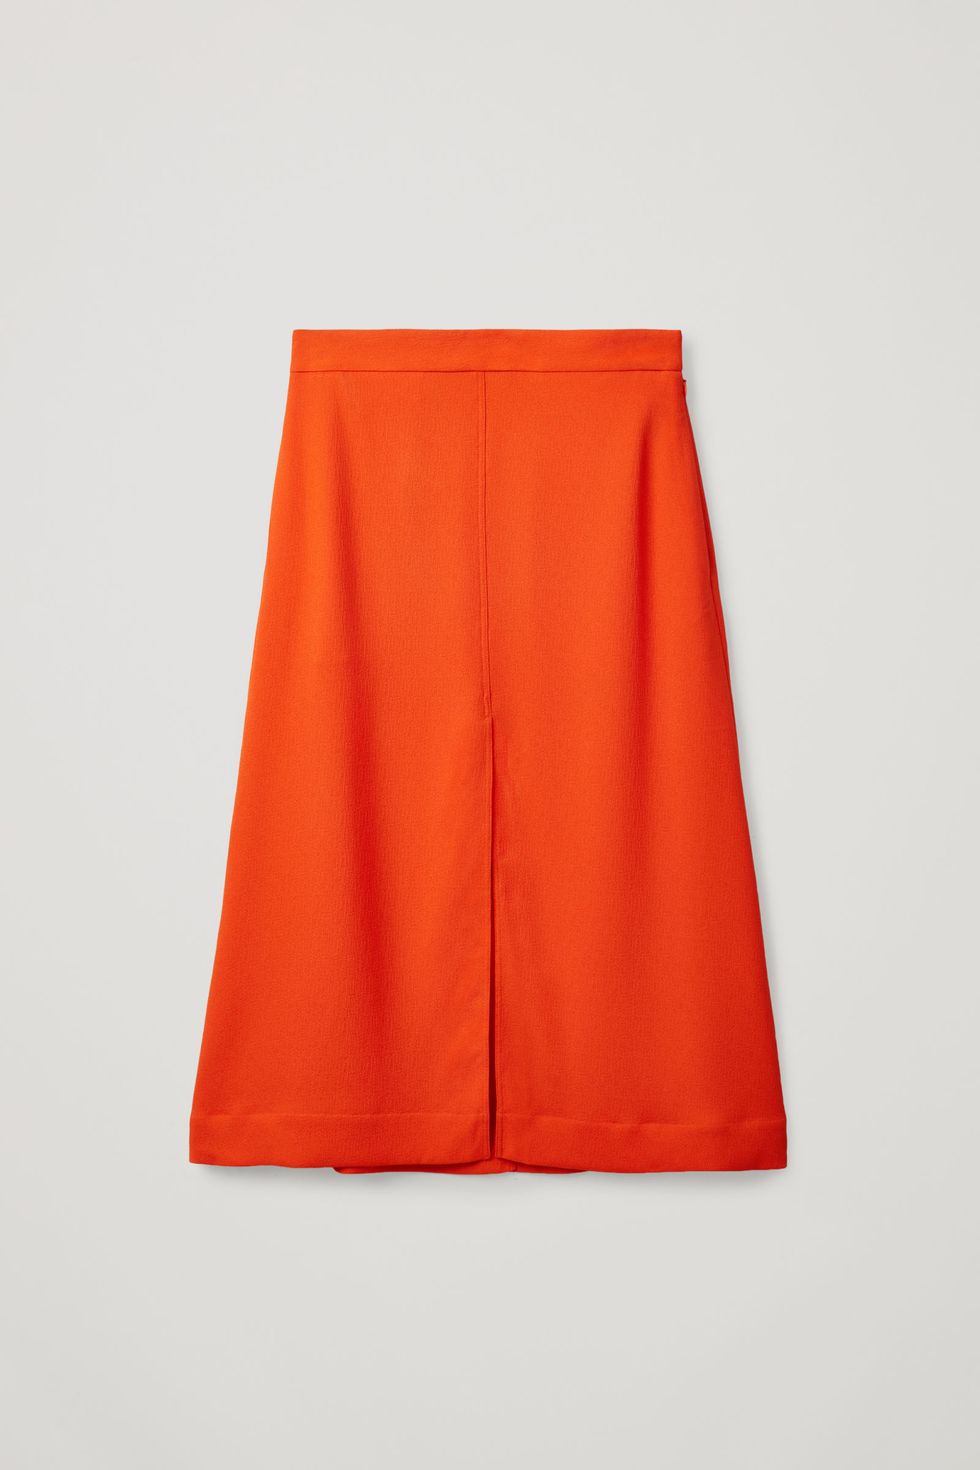 Las faldas midi recuperan la moda de los años 50